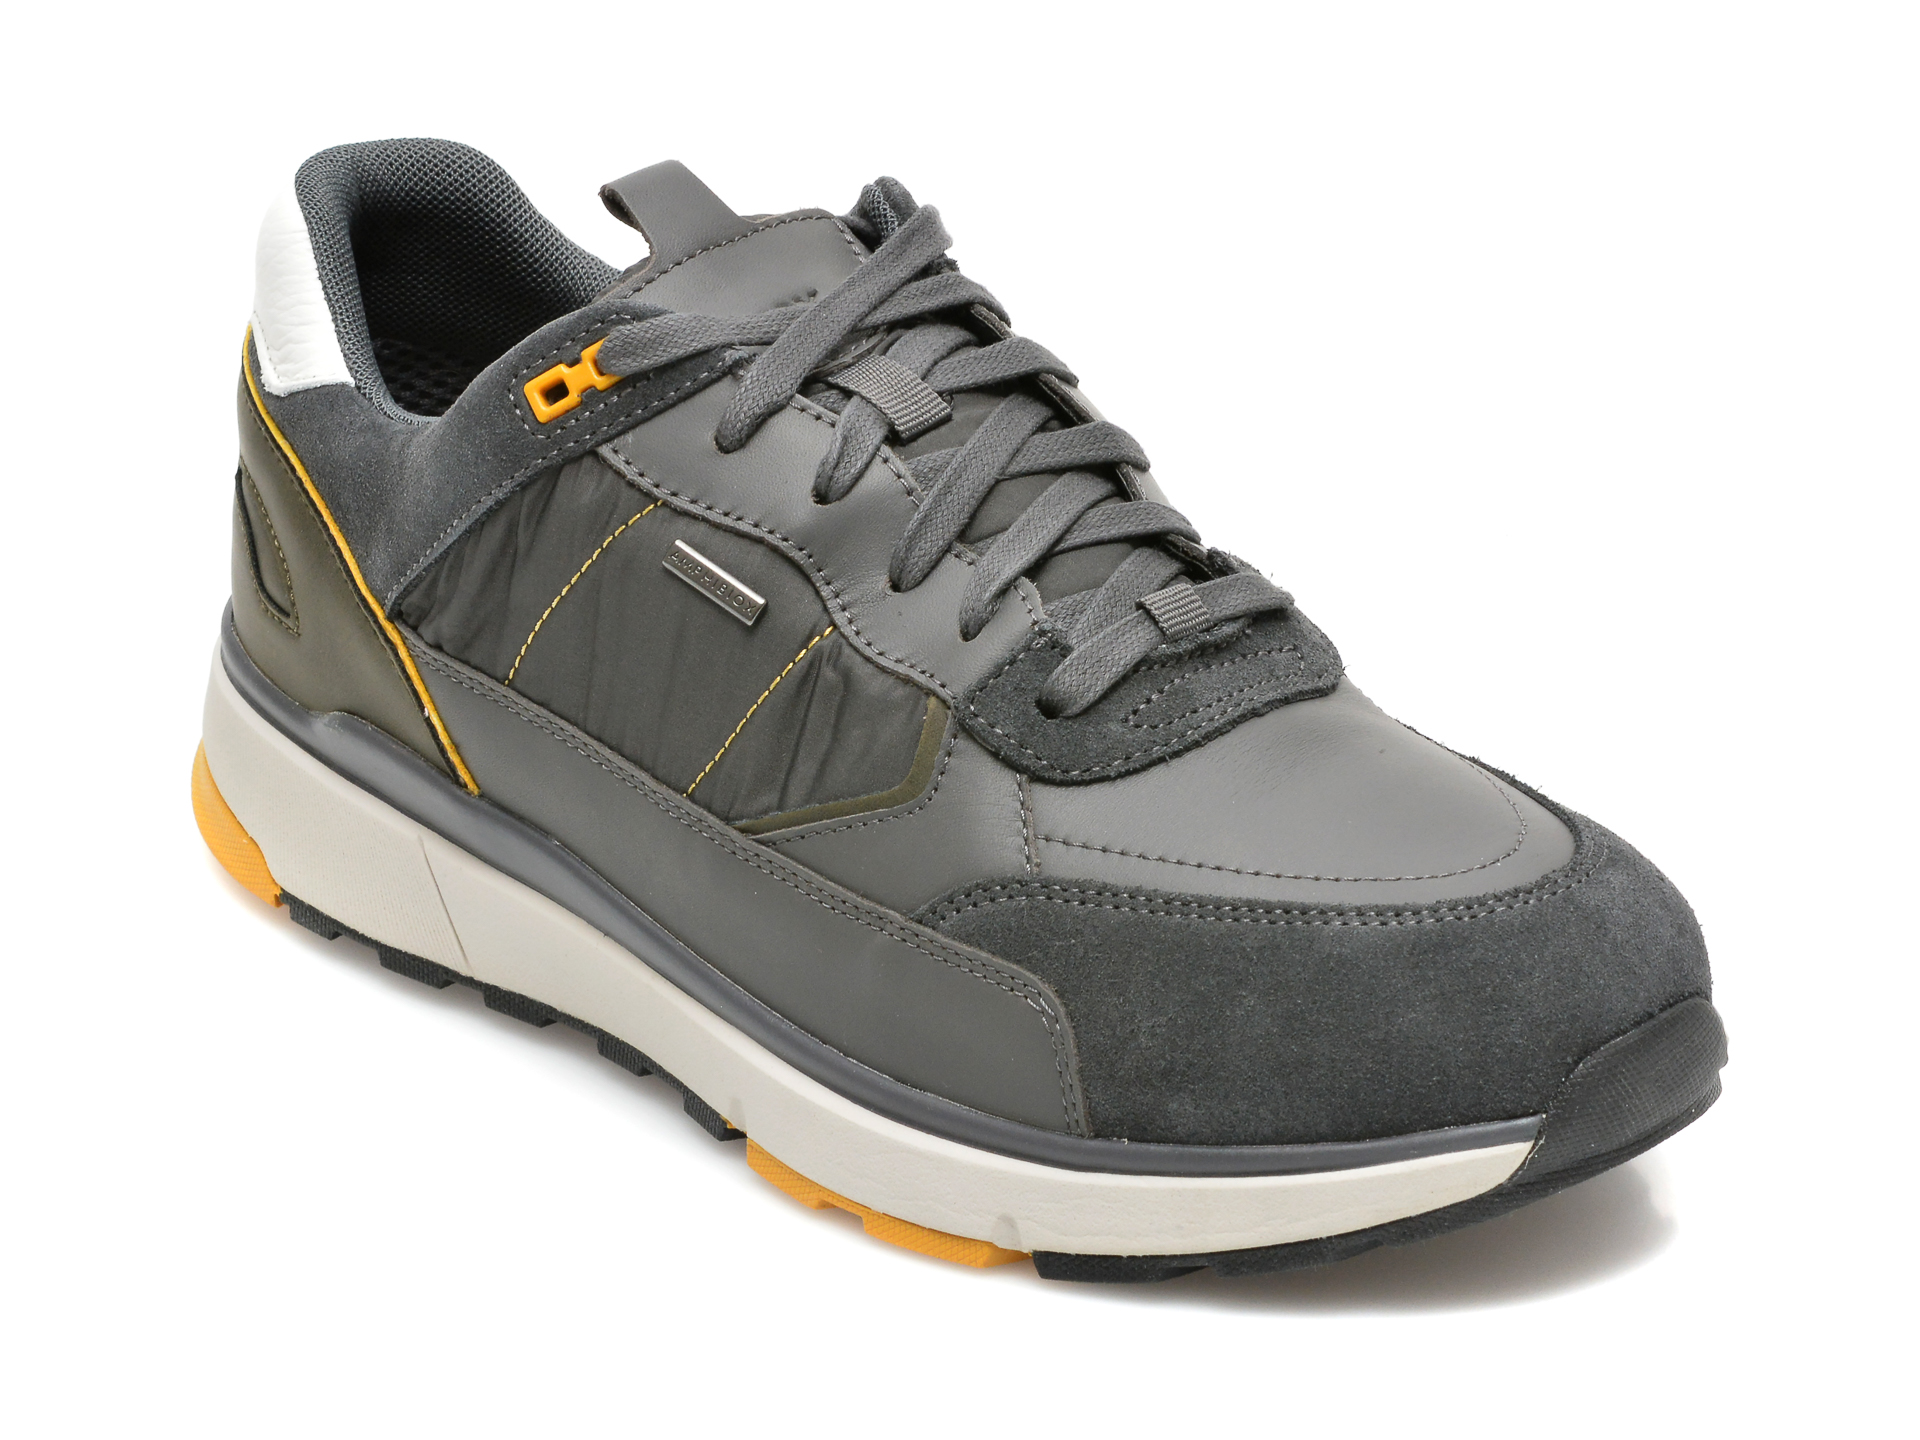 Pantofi sport GEOX gri, U16CRA, din material textil si piele naturala Geox